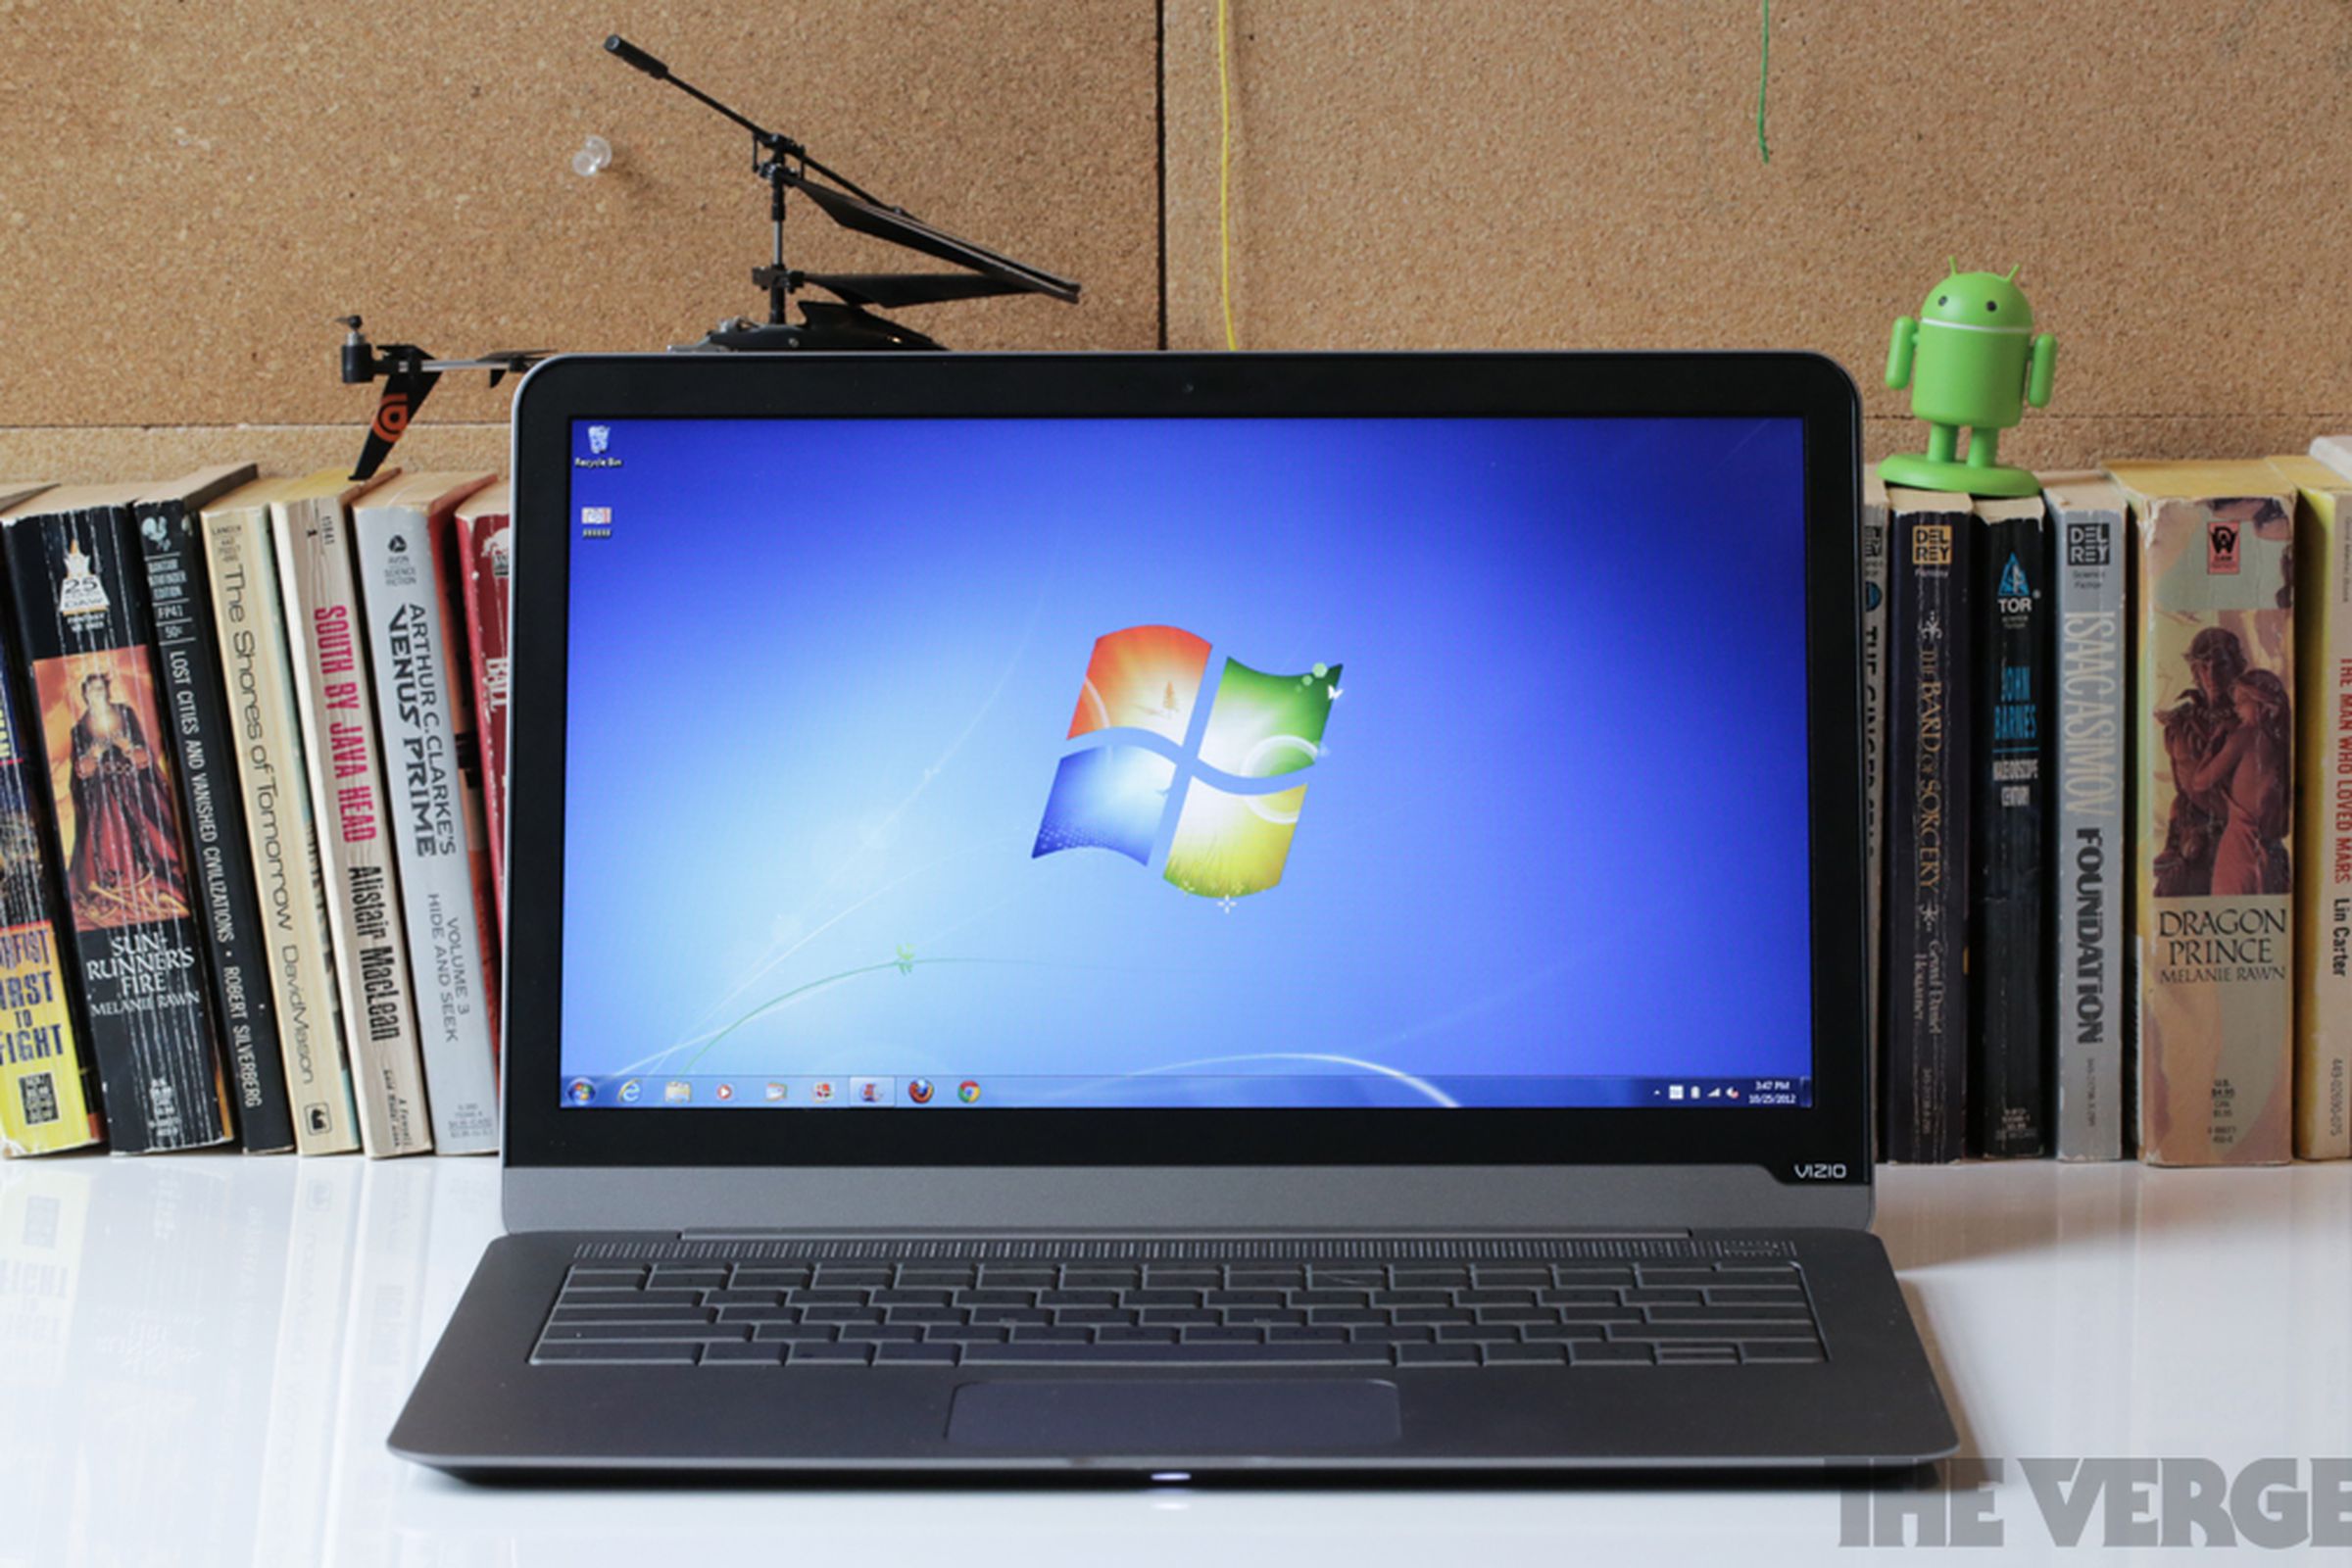 Windows 7 laptop